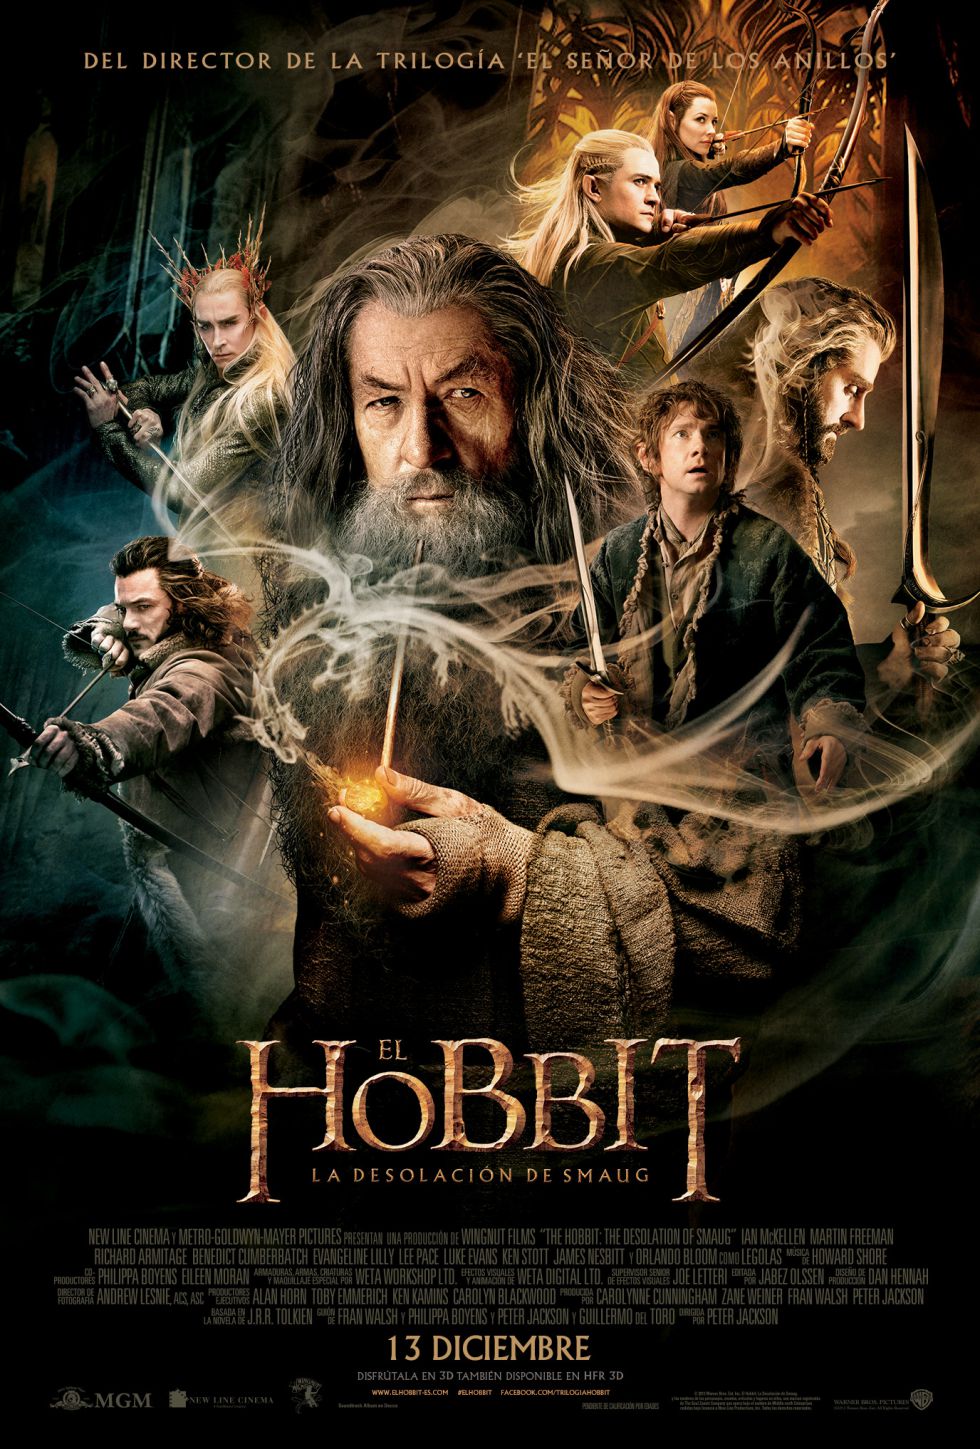 Vive el estreno de "El Hobbit: La desolación de Smaug" con AS